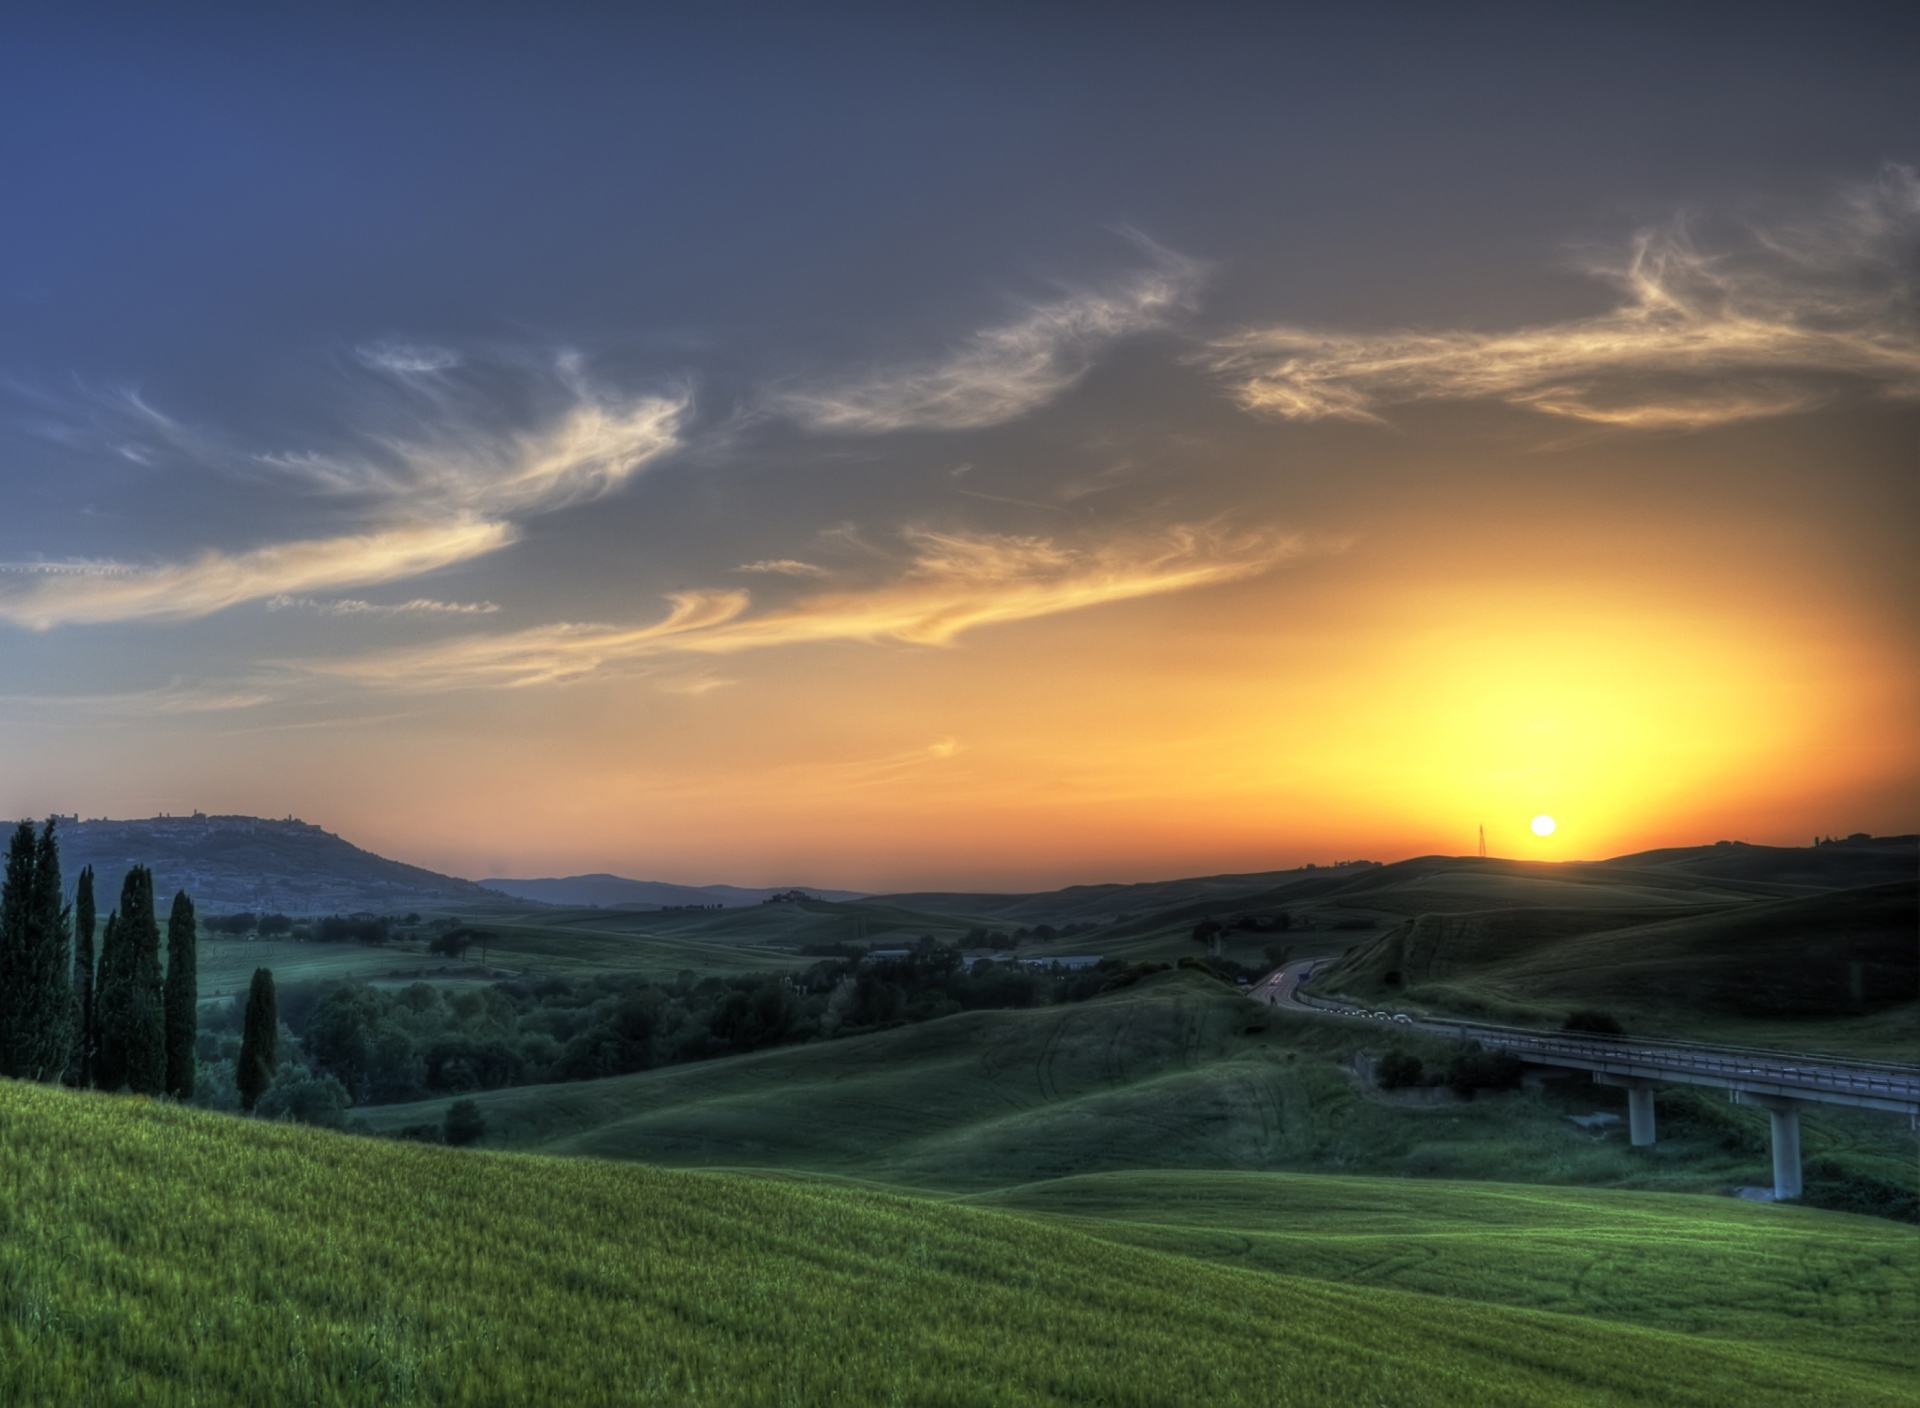 Sfondi Sunset In Tuscany 1920x1408